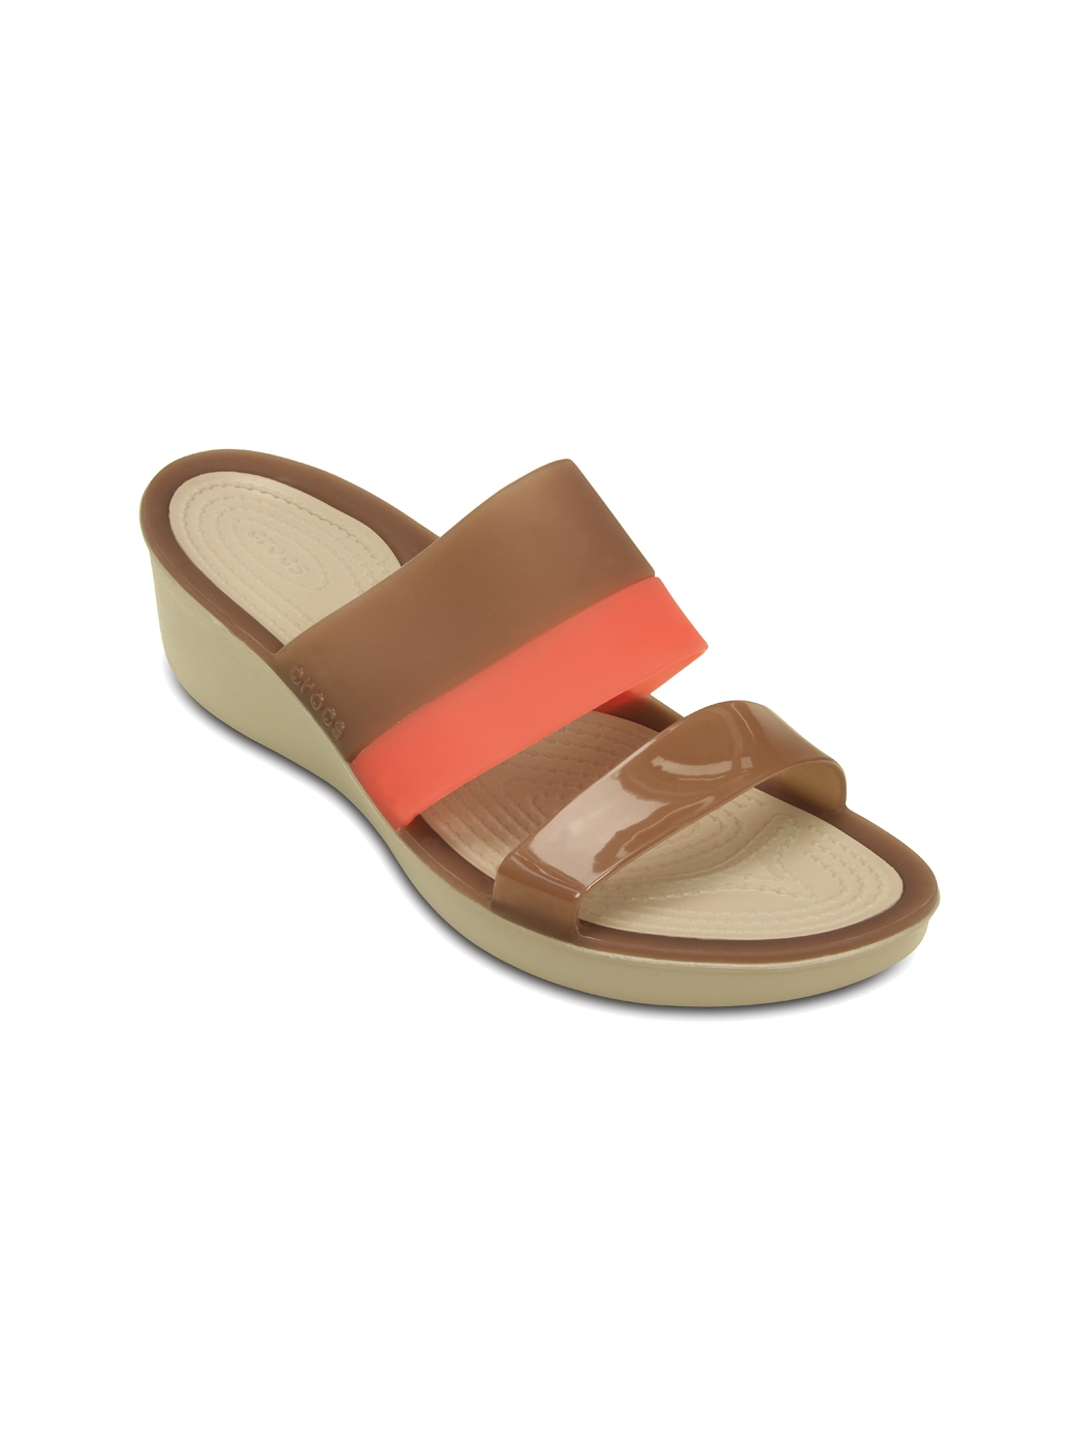 Buy Crocs Color Block Women Brown Pink Wedges - Heels for Women 1350705 |  Myntra